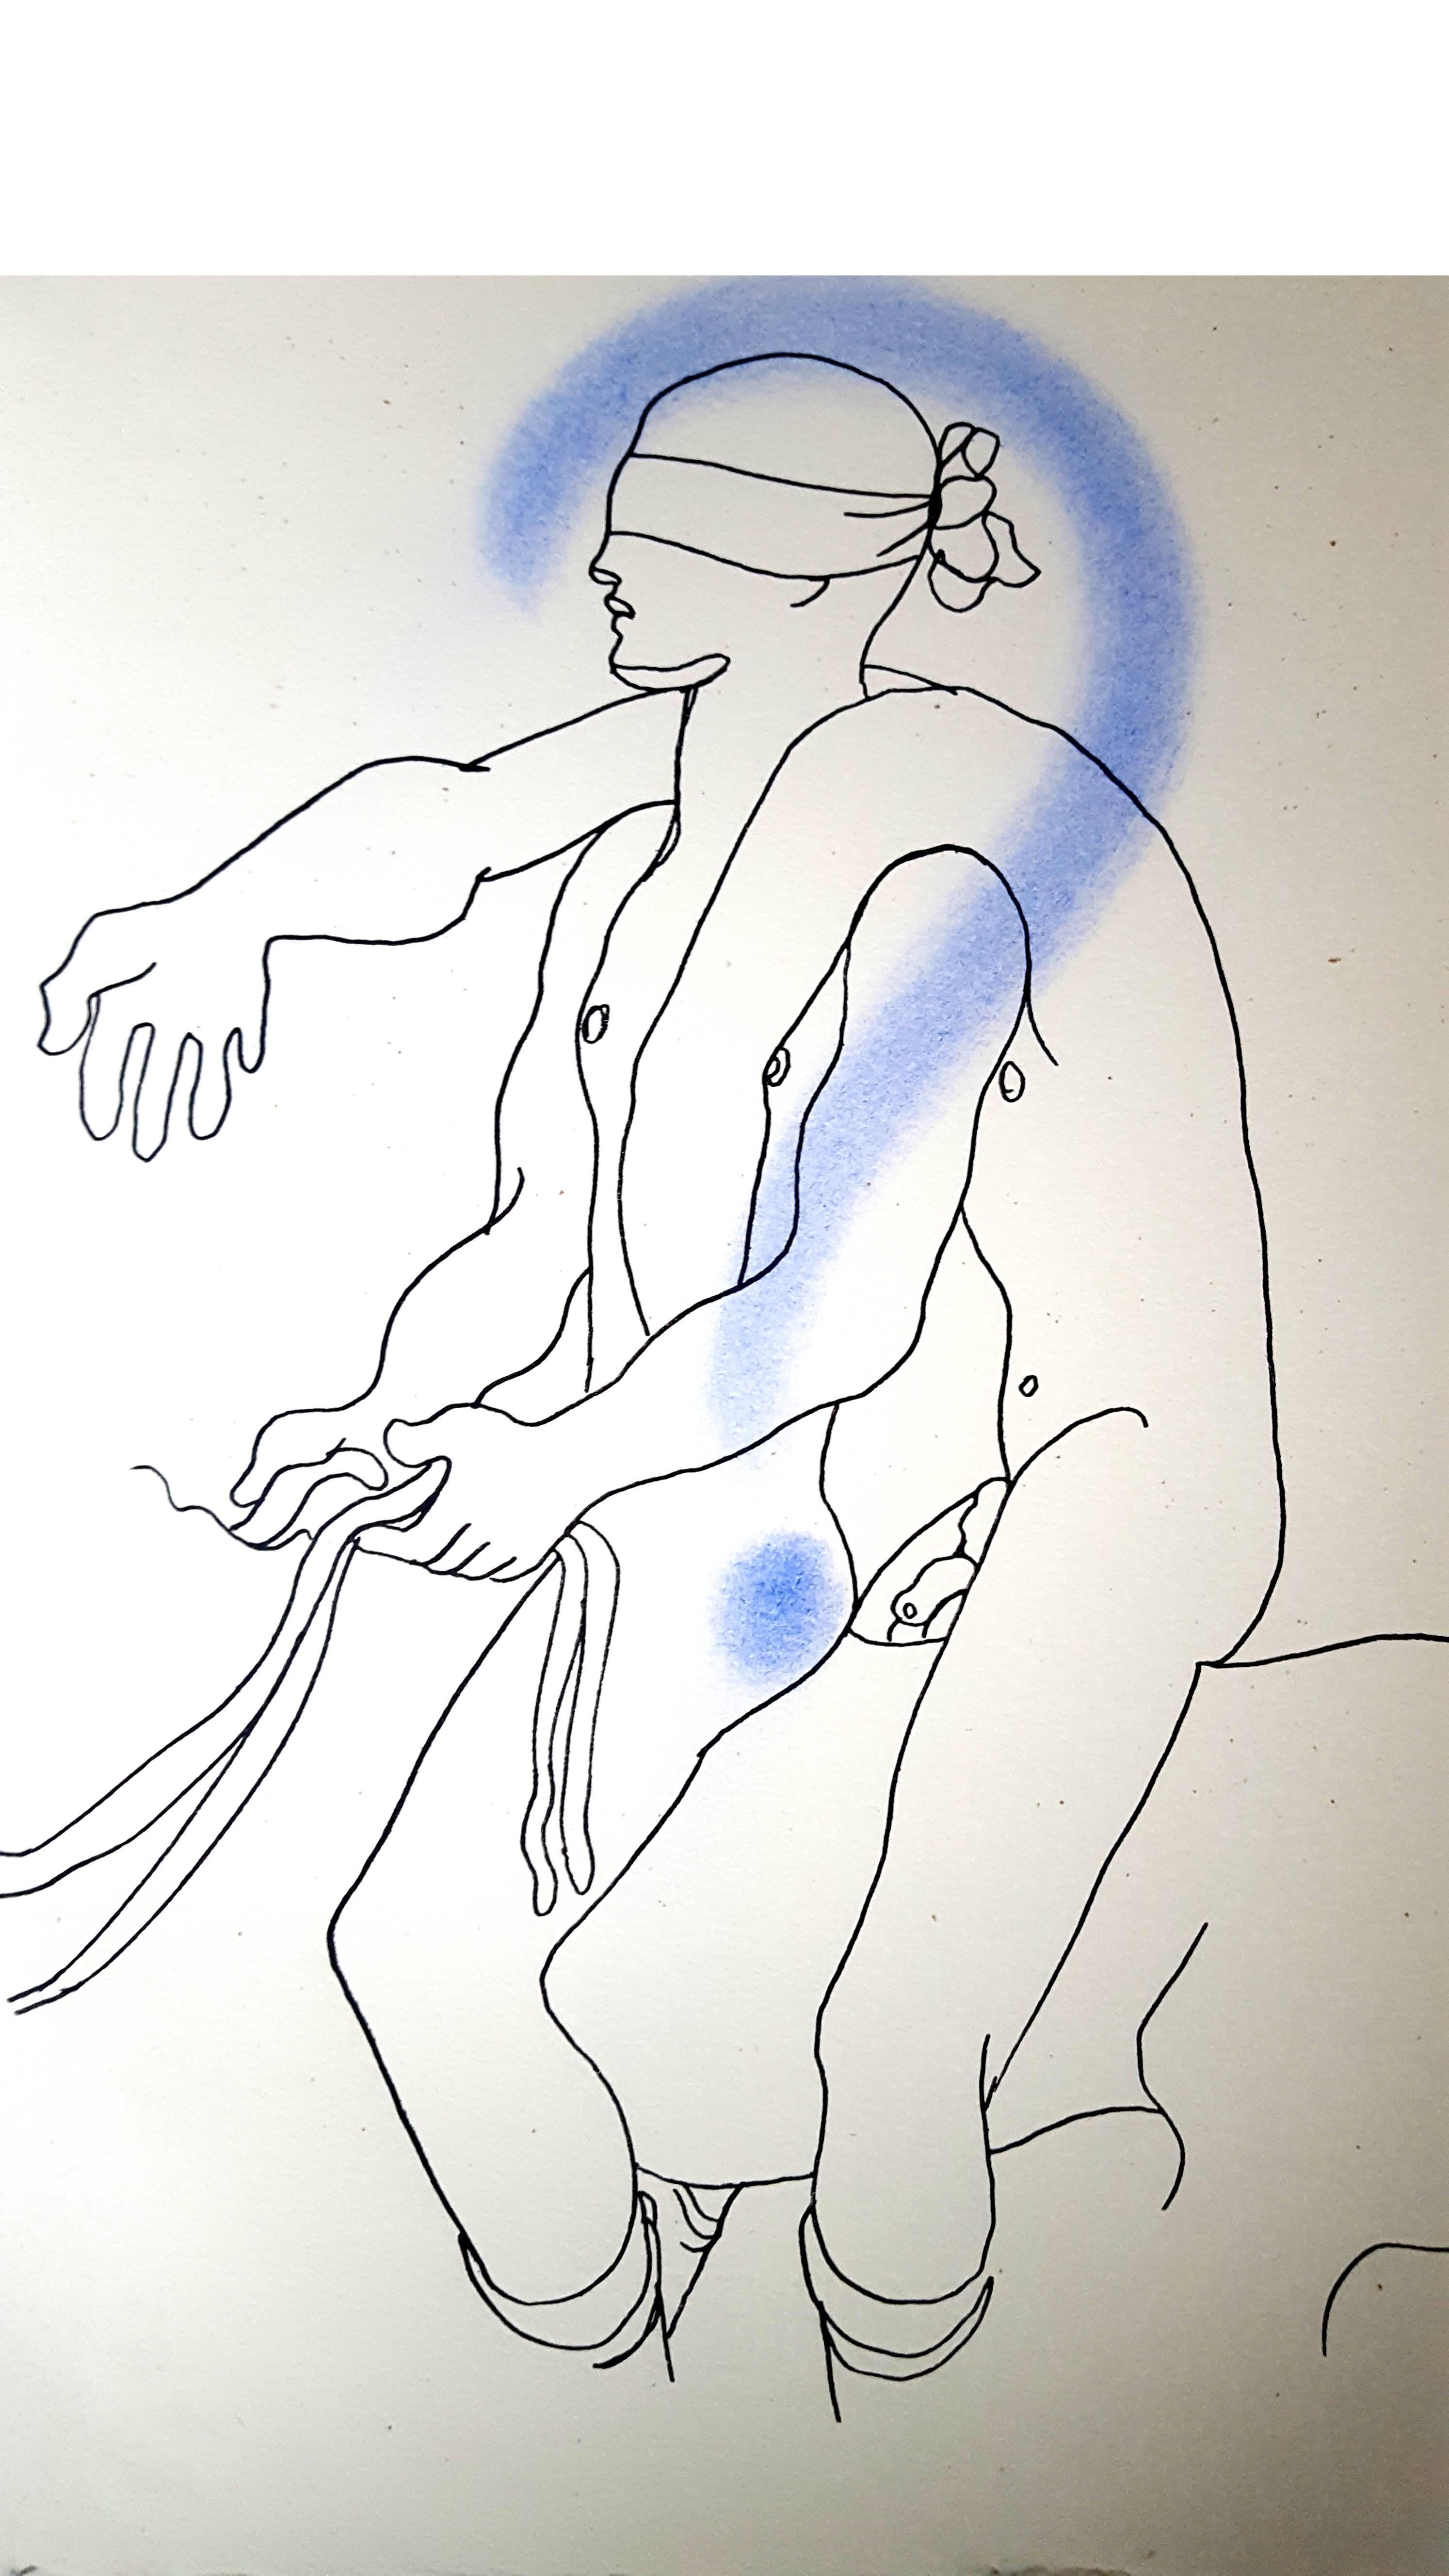 Jean Cocteau
White Book - Autobiographie über Cocteaus Entdeckung seiner Homosexualität. Das Buch wurde zunächst anonym veröffentlicht und löste einen Skandal aus.
Original handkolorierte Lithographie
Abmessungen: 28,4 x 22,8 cm
Auflage von 380